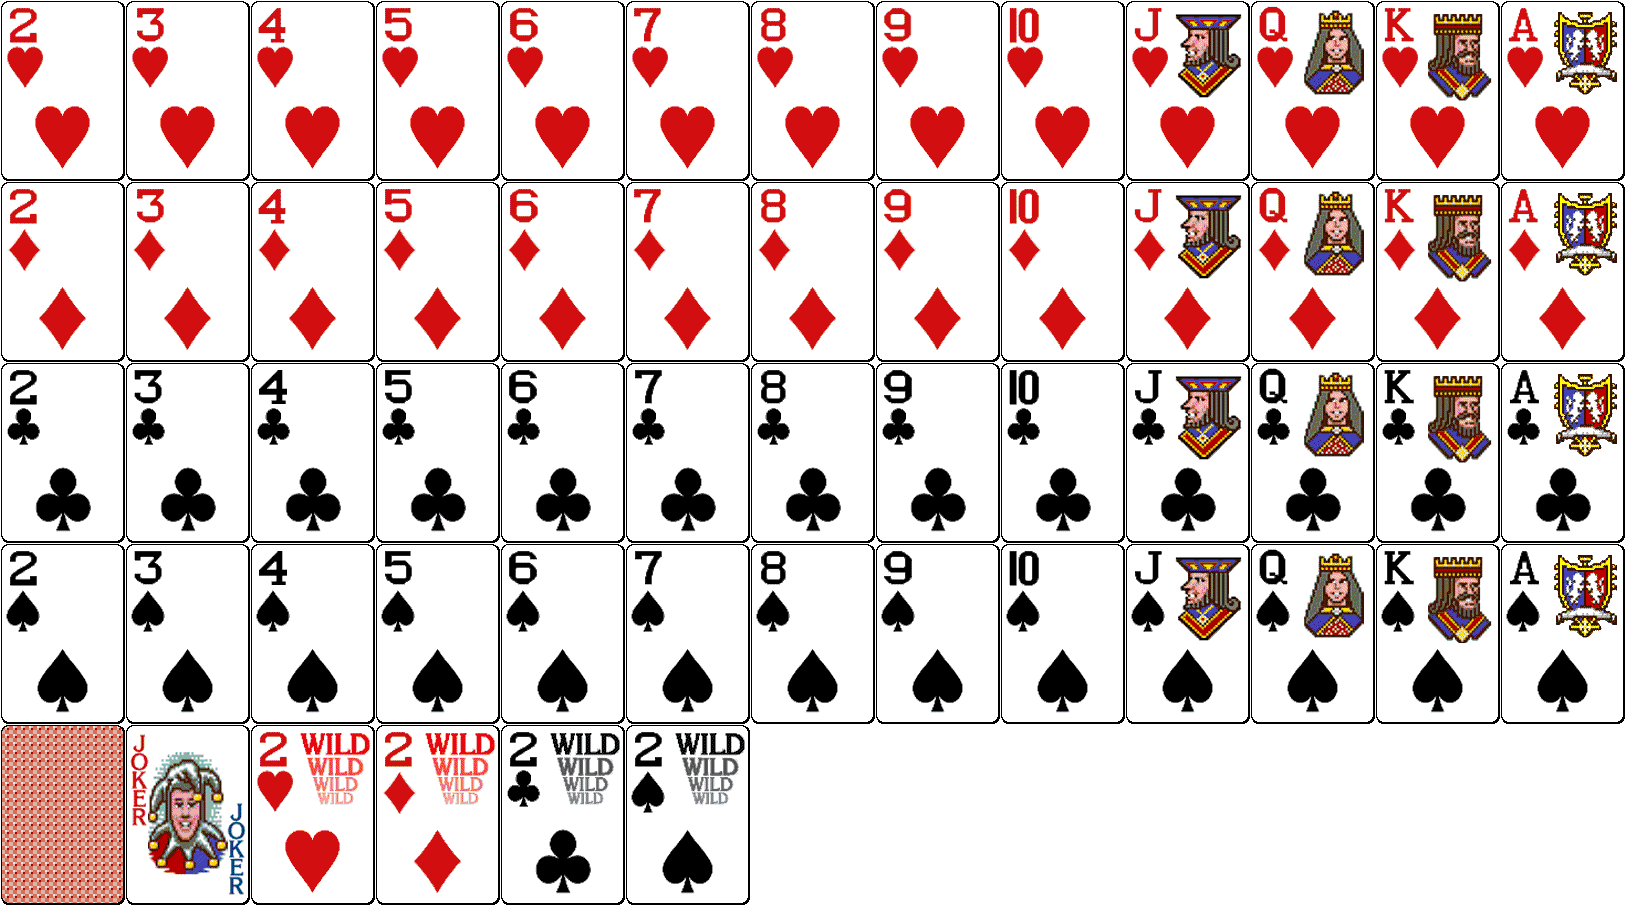 В игральной колоде 36 карт. Покер колода 52 карты. Колода в 52 карты в холдеме. Мини карты. Маленькие игральные карты.